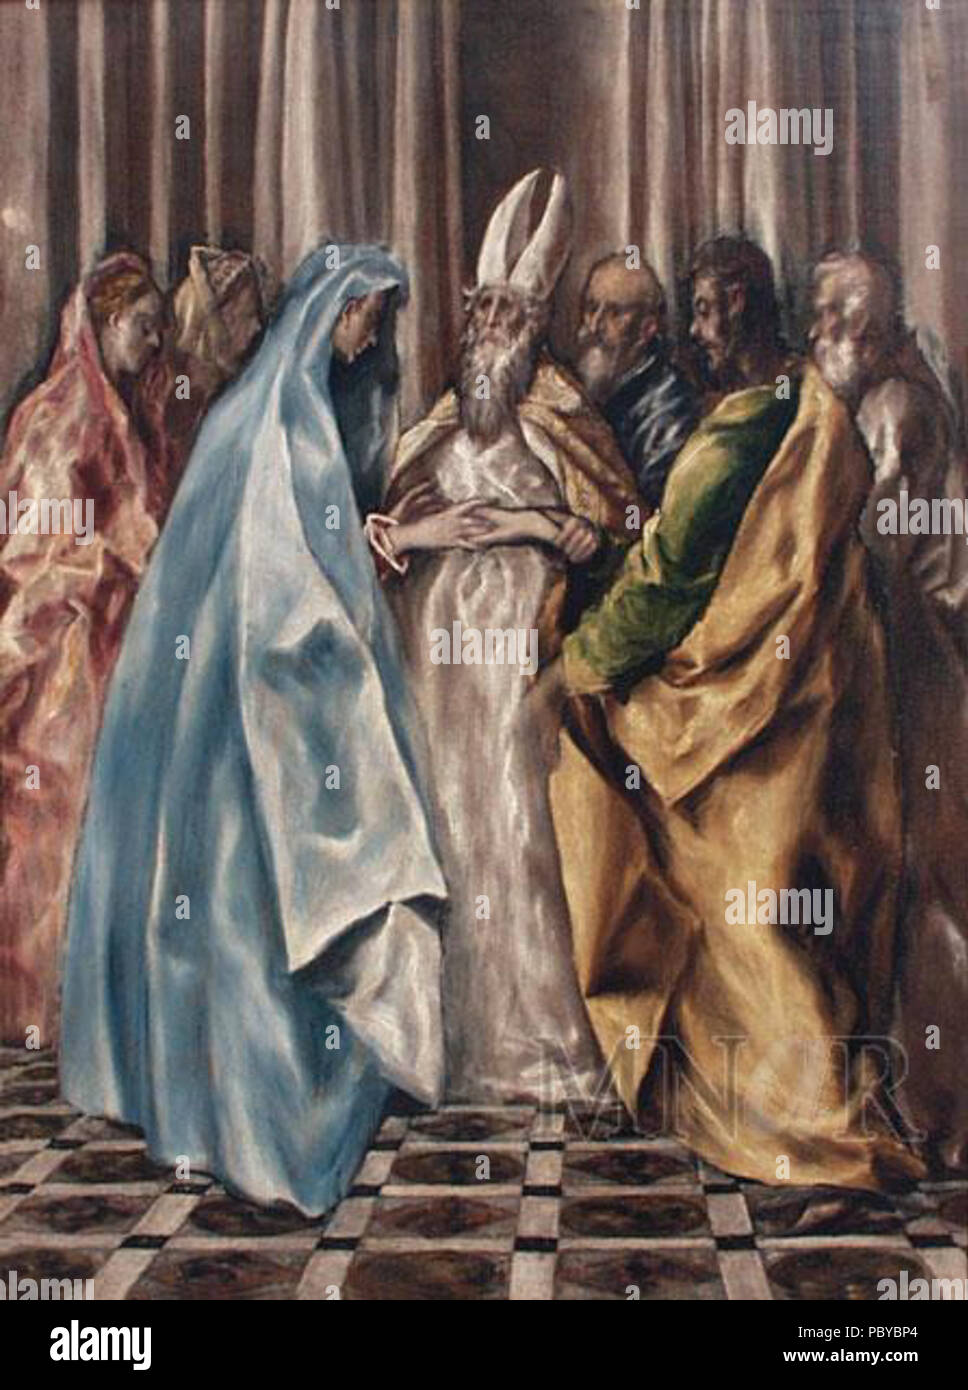 182 El Greco - Le mariage de la Vierge Banque D'Images